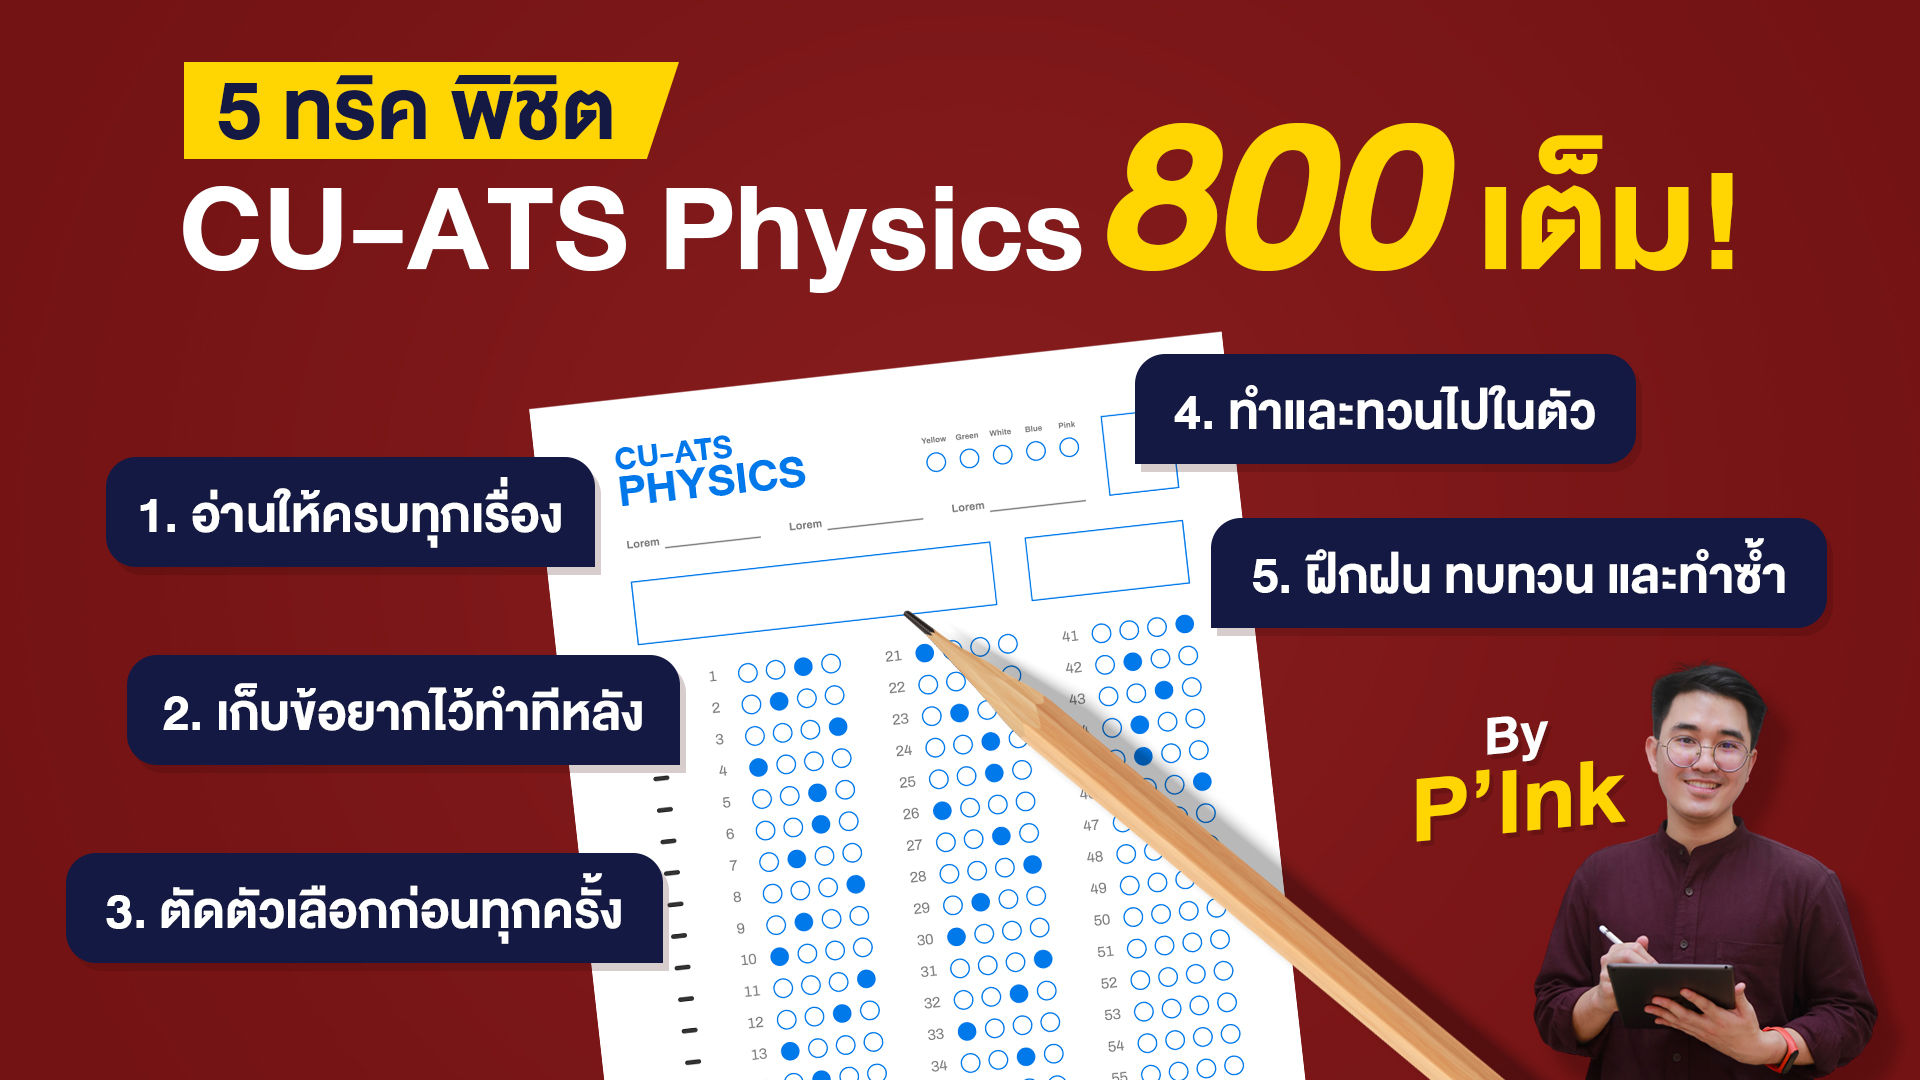 5 ทิคพิชิต CU-ATS Physics 800 เต็ม - โดยพี่อิ้งค์ - Bigcover2